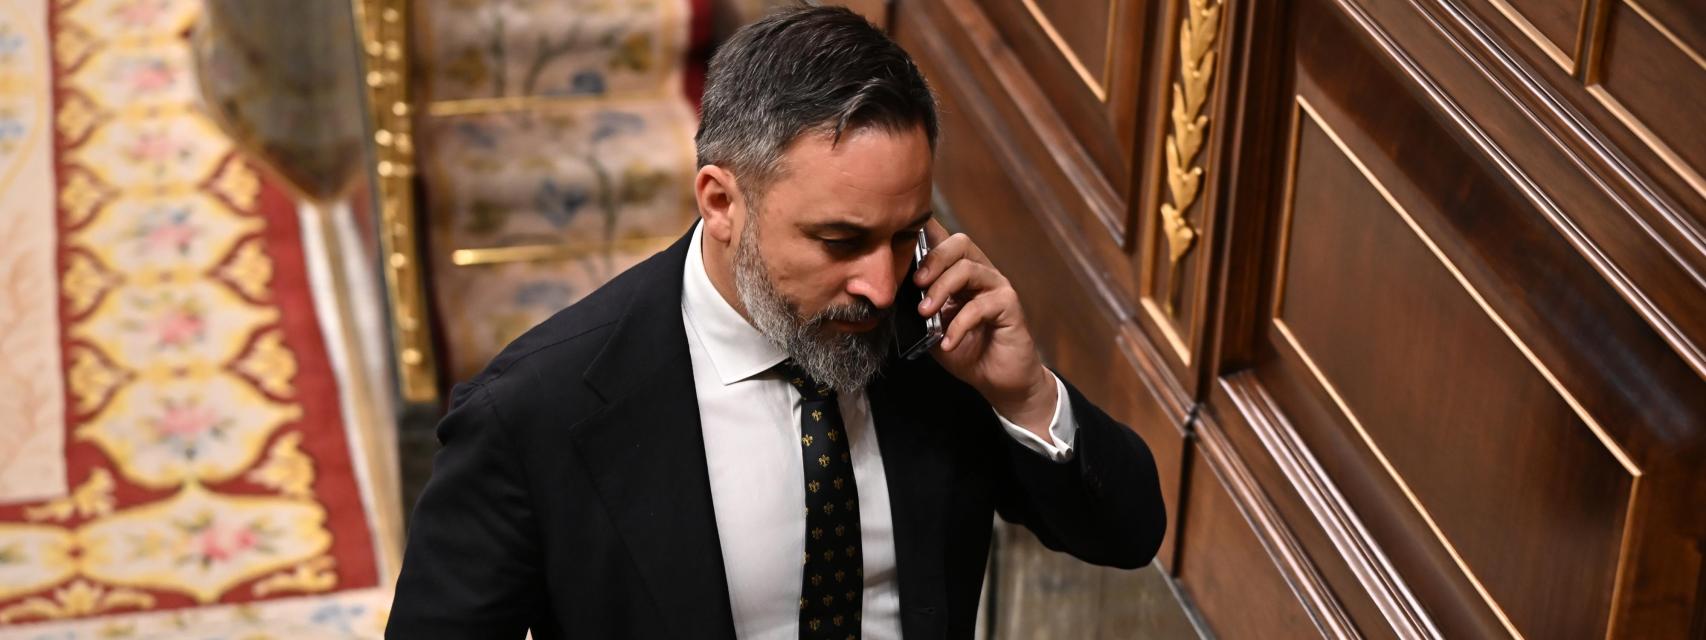 El líder de VOX Santiago Abascal atiende una llamada mientras abandona el hemiciclo durante el pleno del Congreso, este jueves.